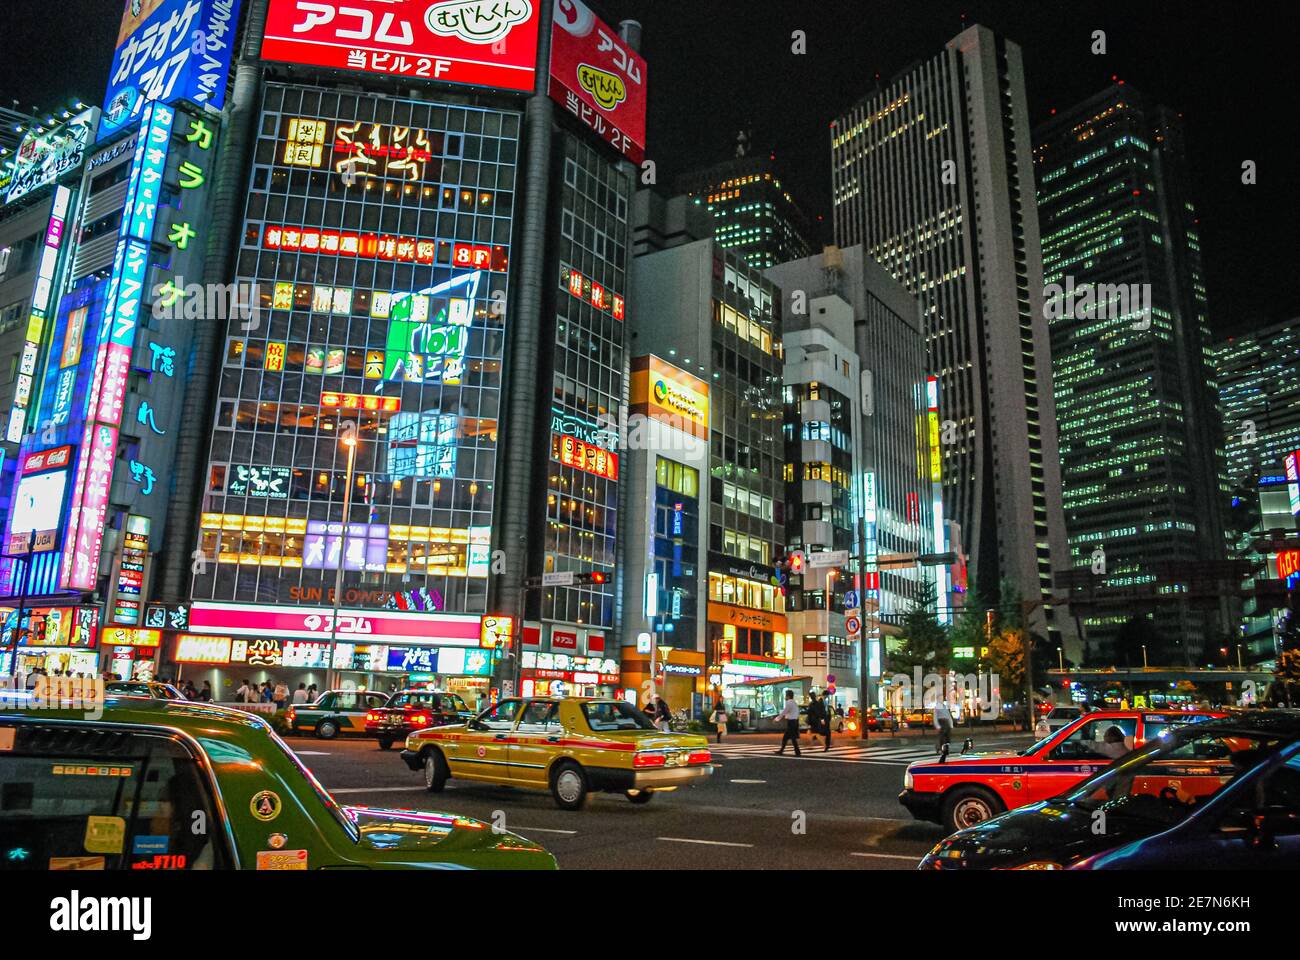 Night scene in Tokyo, Japan Stock Photo